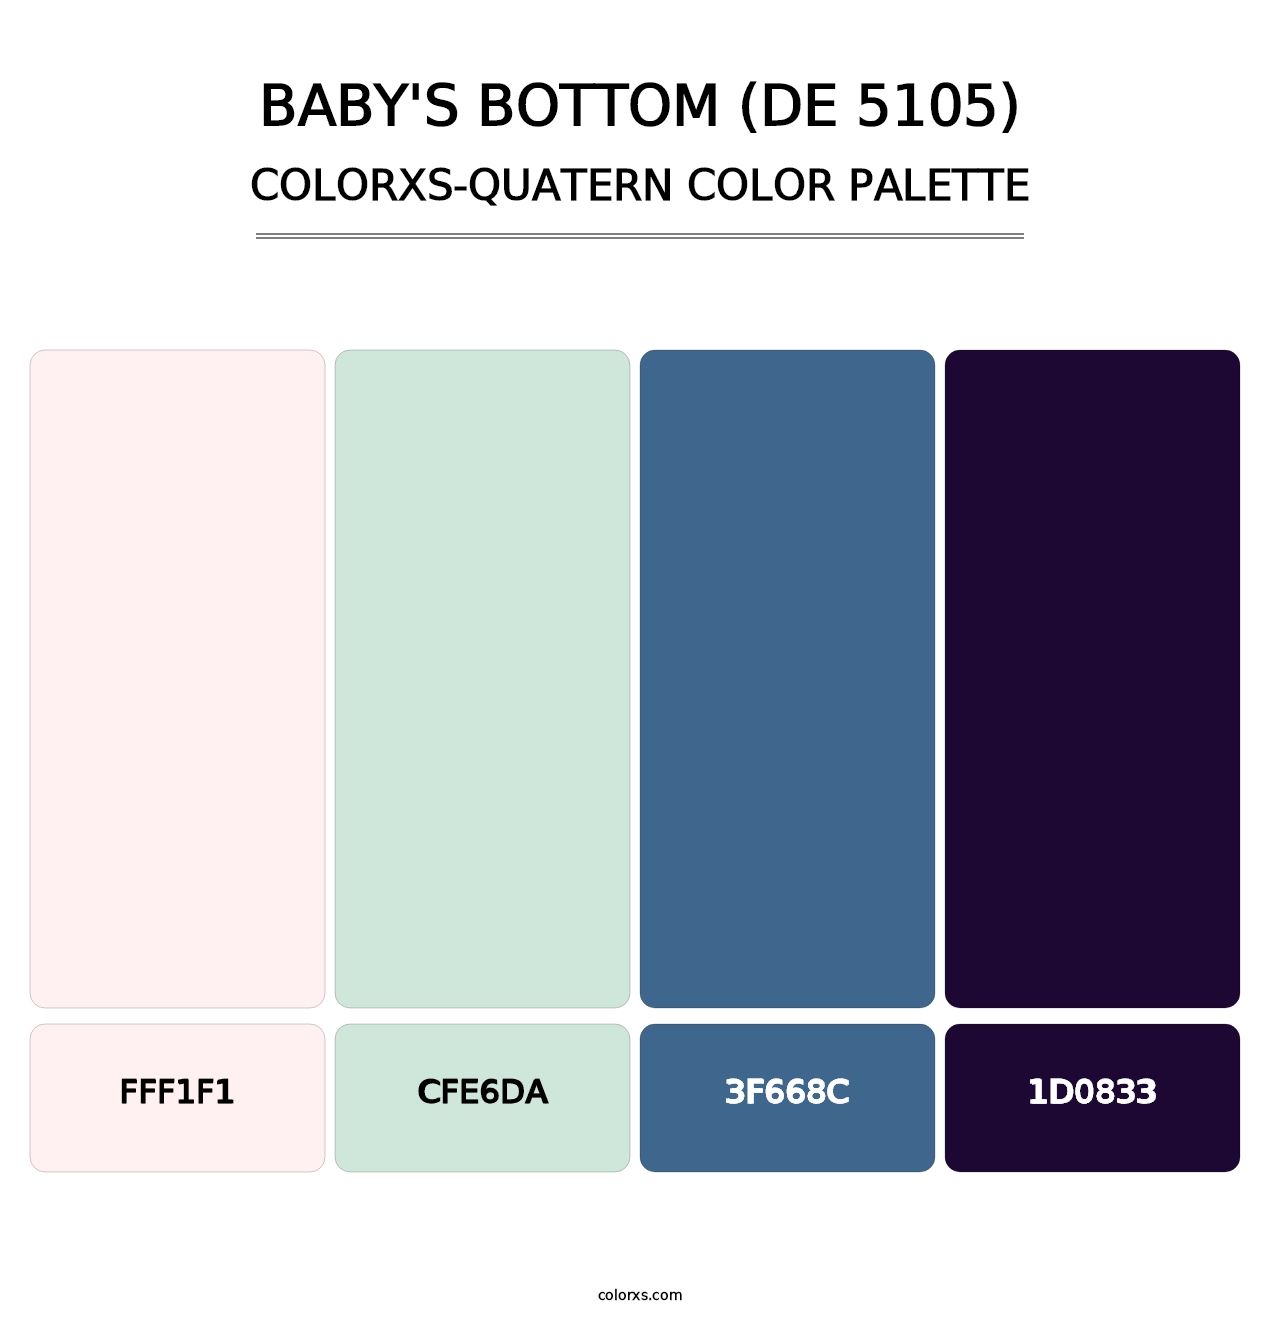 Baby's Bottom (DE 5105) - Colorxs Quatern Palette